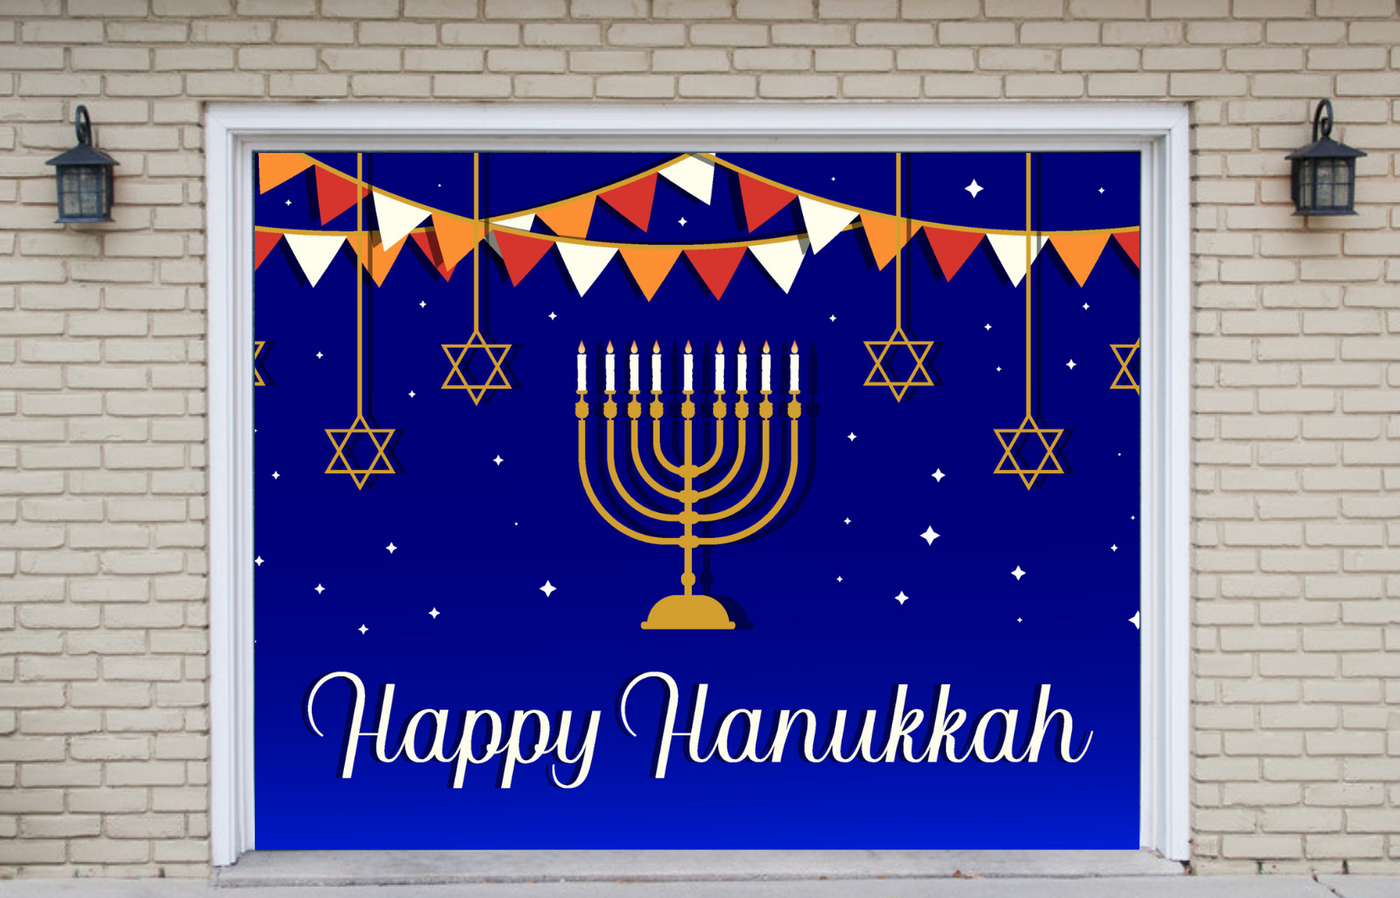 Happy Hanukkah Jewish holiday Garage Door Wrap Cover Mural Decoration